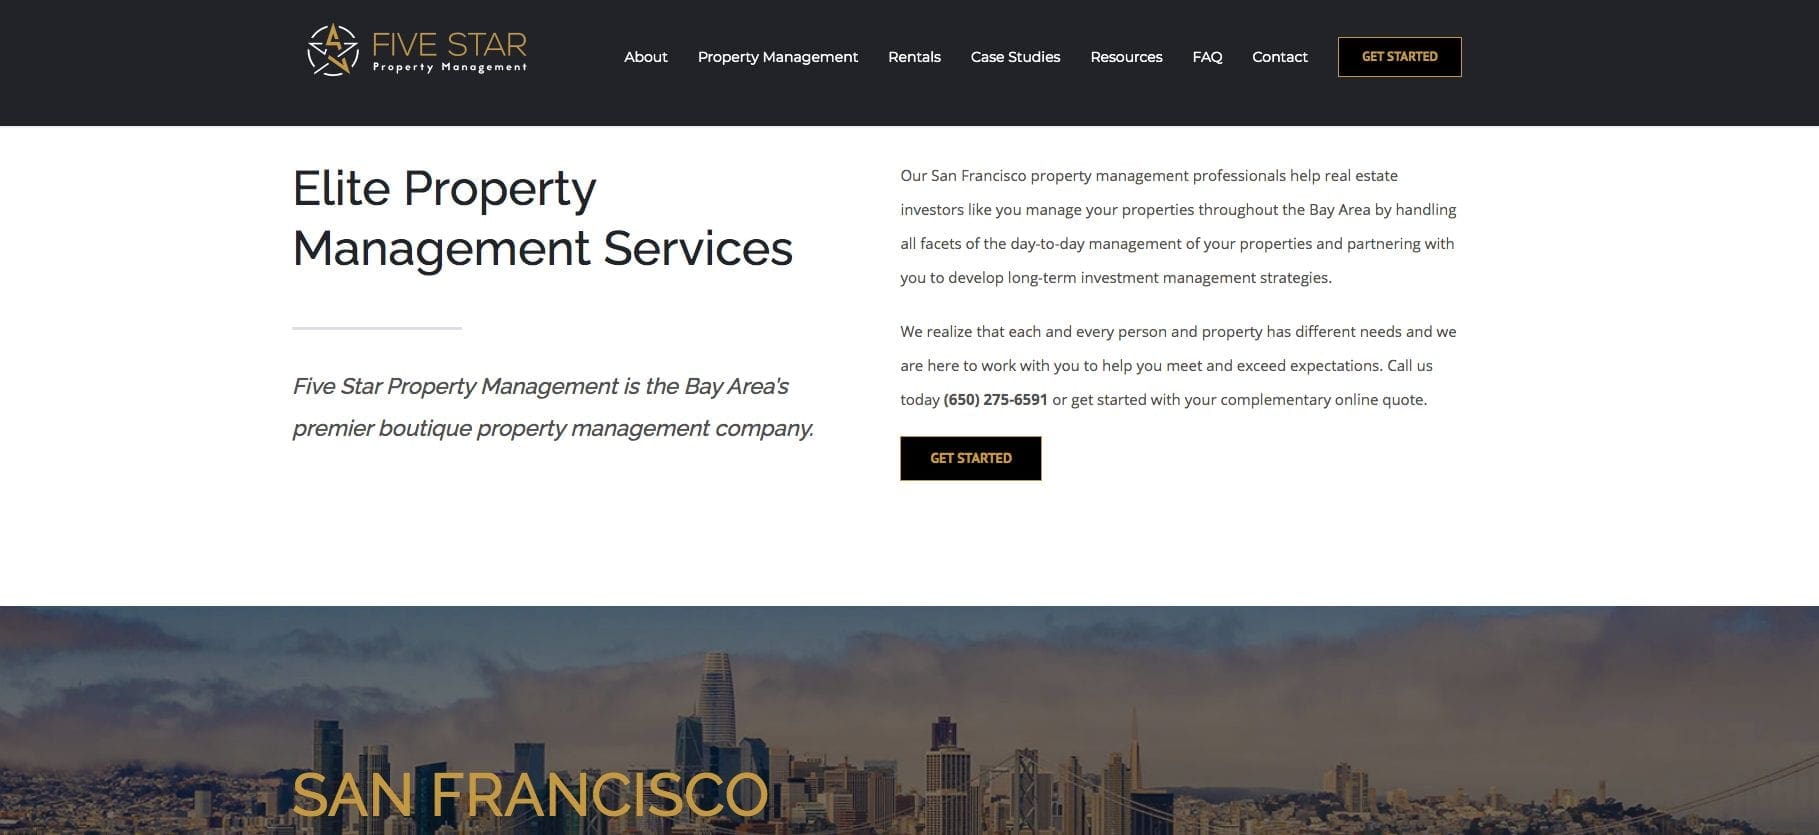 Five star property management san francisco website